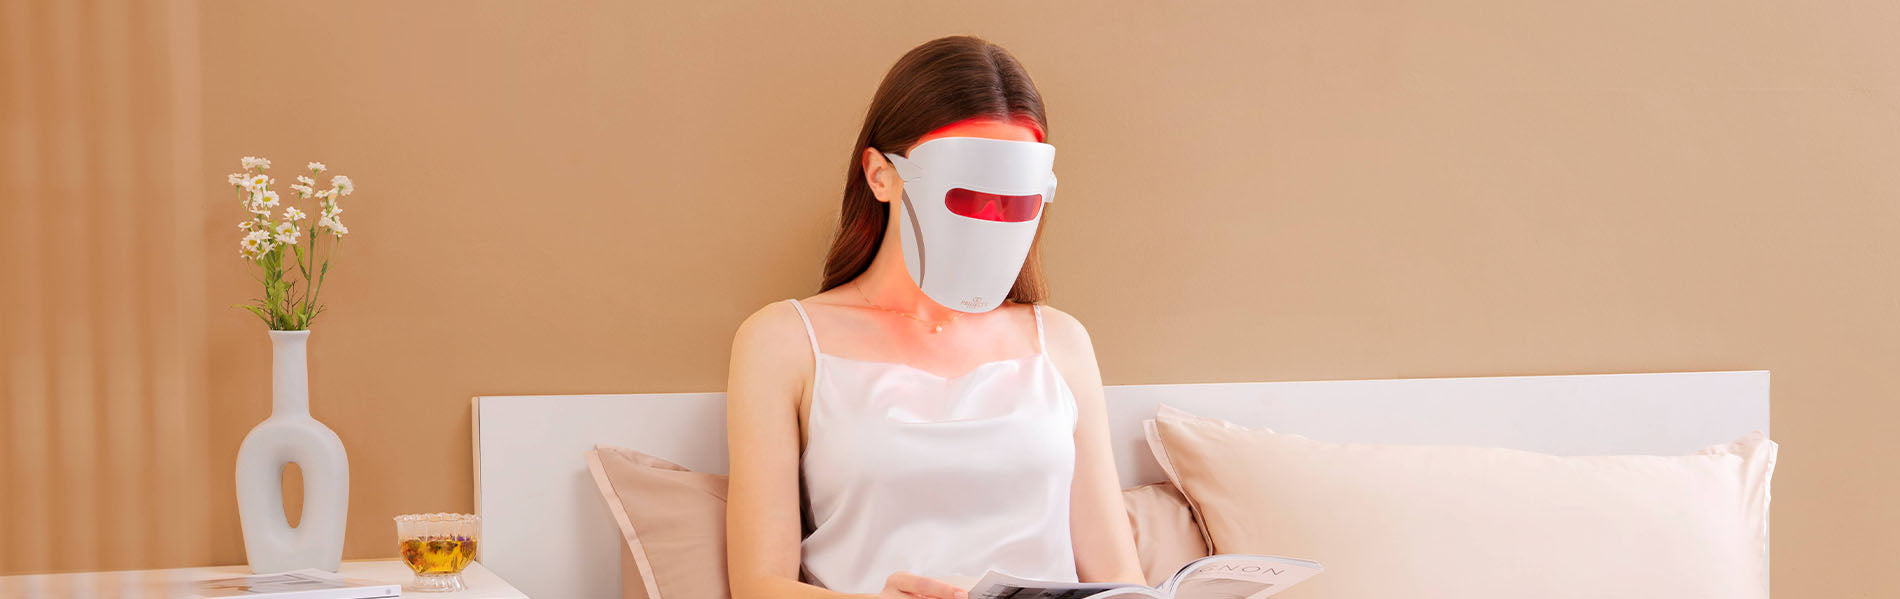 Should I use my LED Mask everyday?